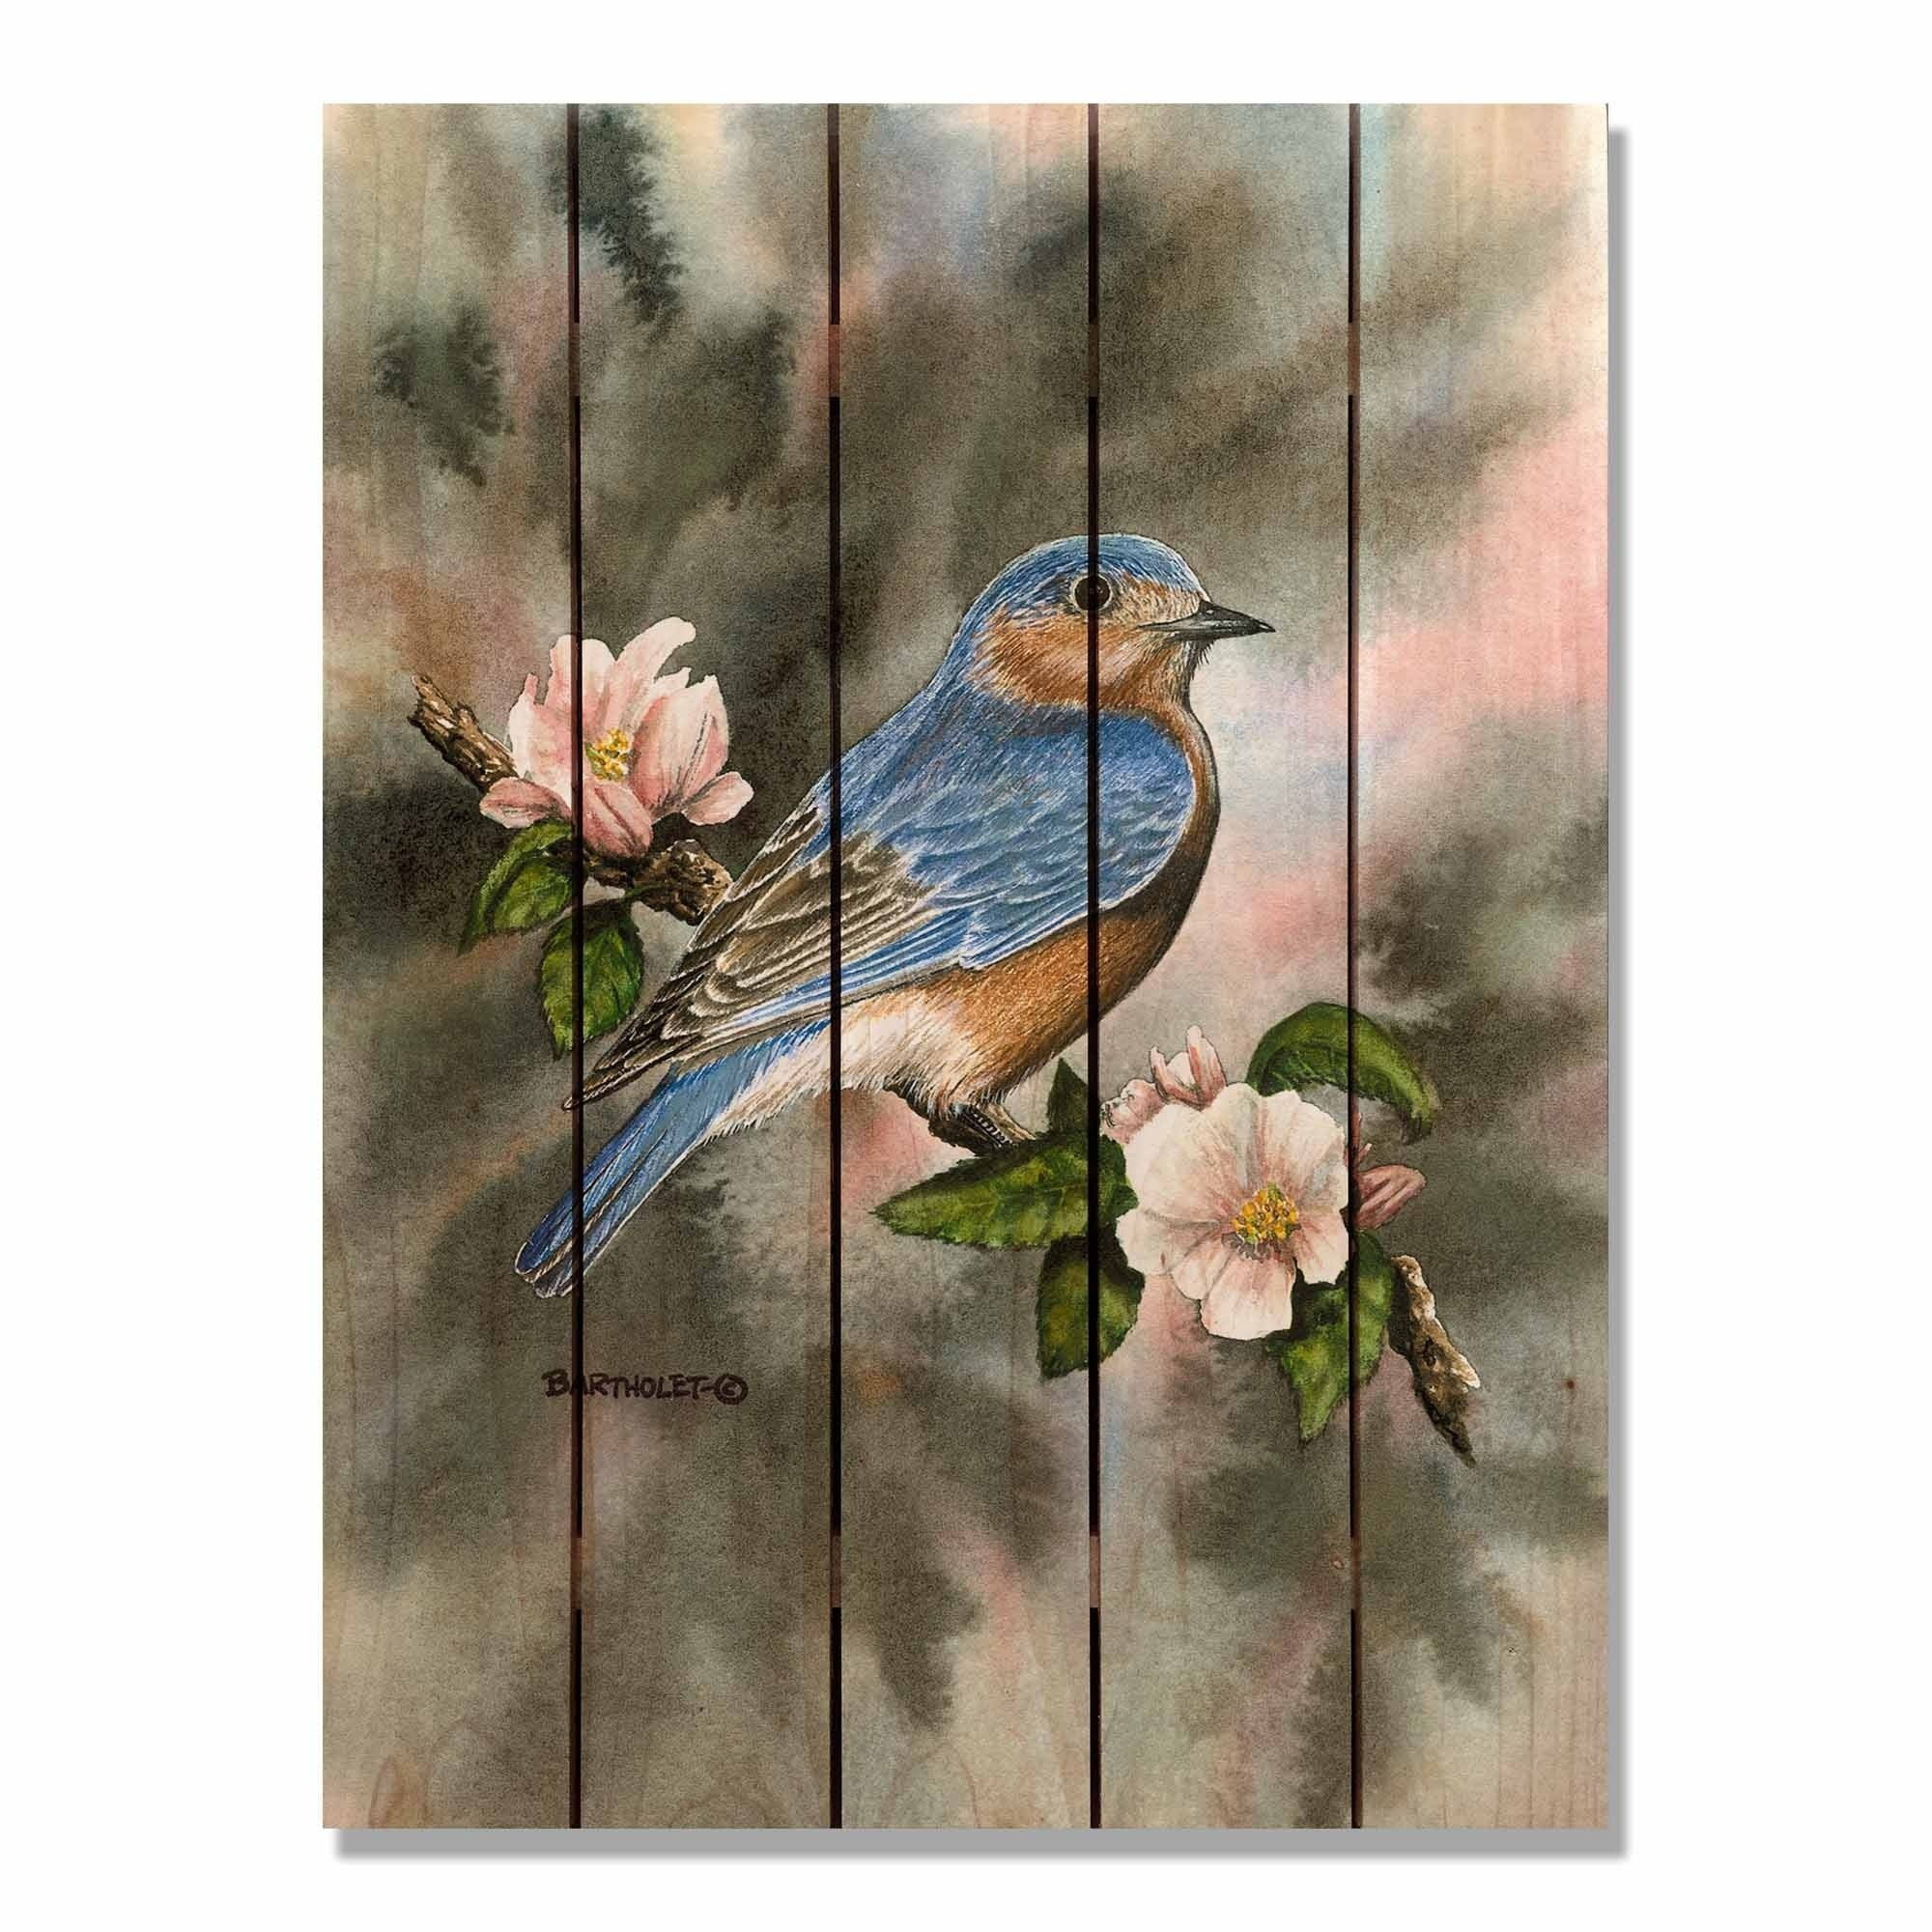 Day Dream Hq Dbbi2836 28 X 36 In. Bartholets Bluebird Inside & Outside Cedar Wall Art